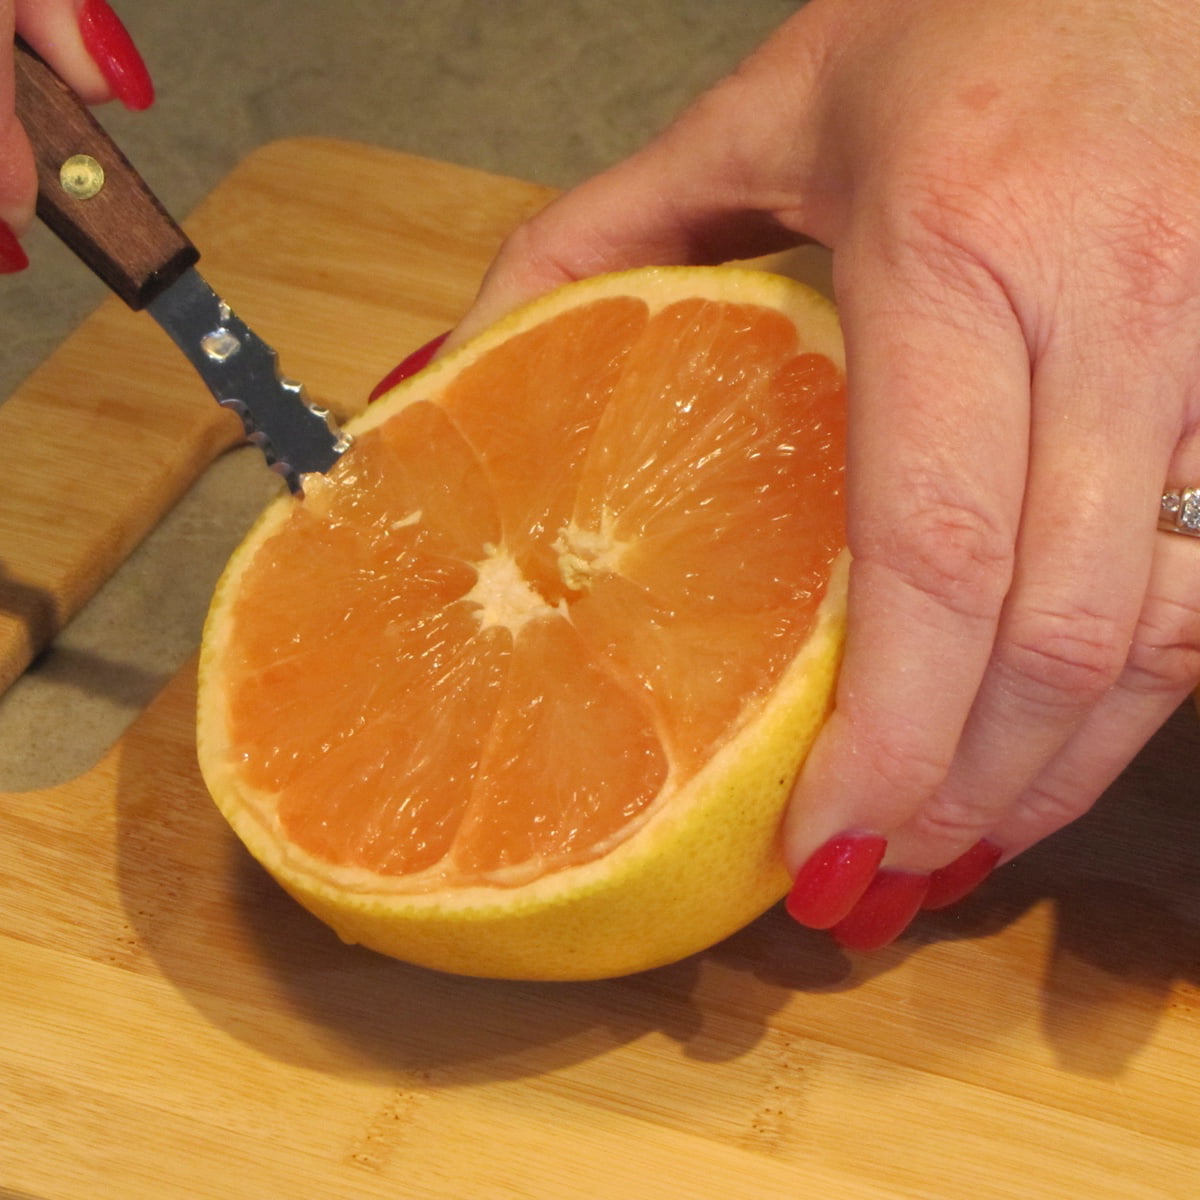 2 Pack Grapefruit Knife Stainless Steel Citrus Fruit Vintage Dessert  Kitchen Set, 1 - Kroger